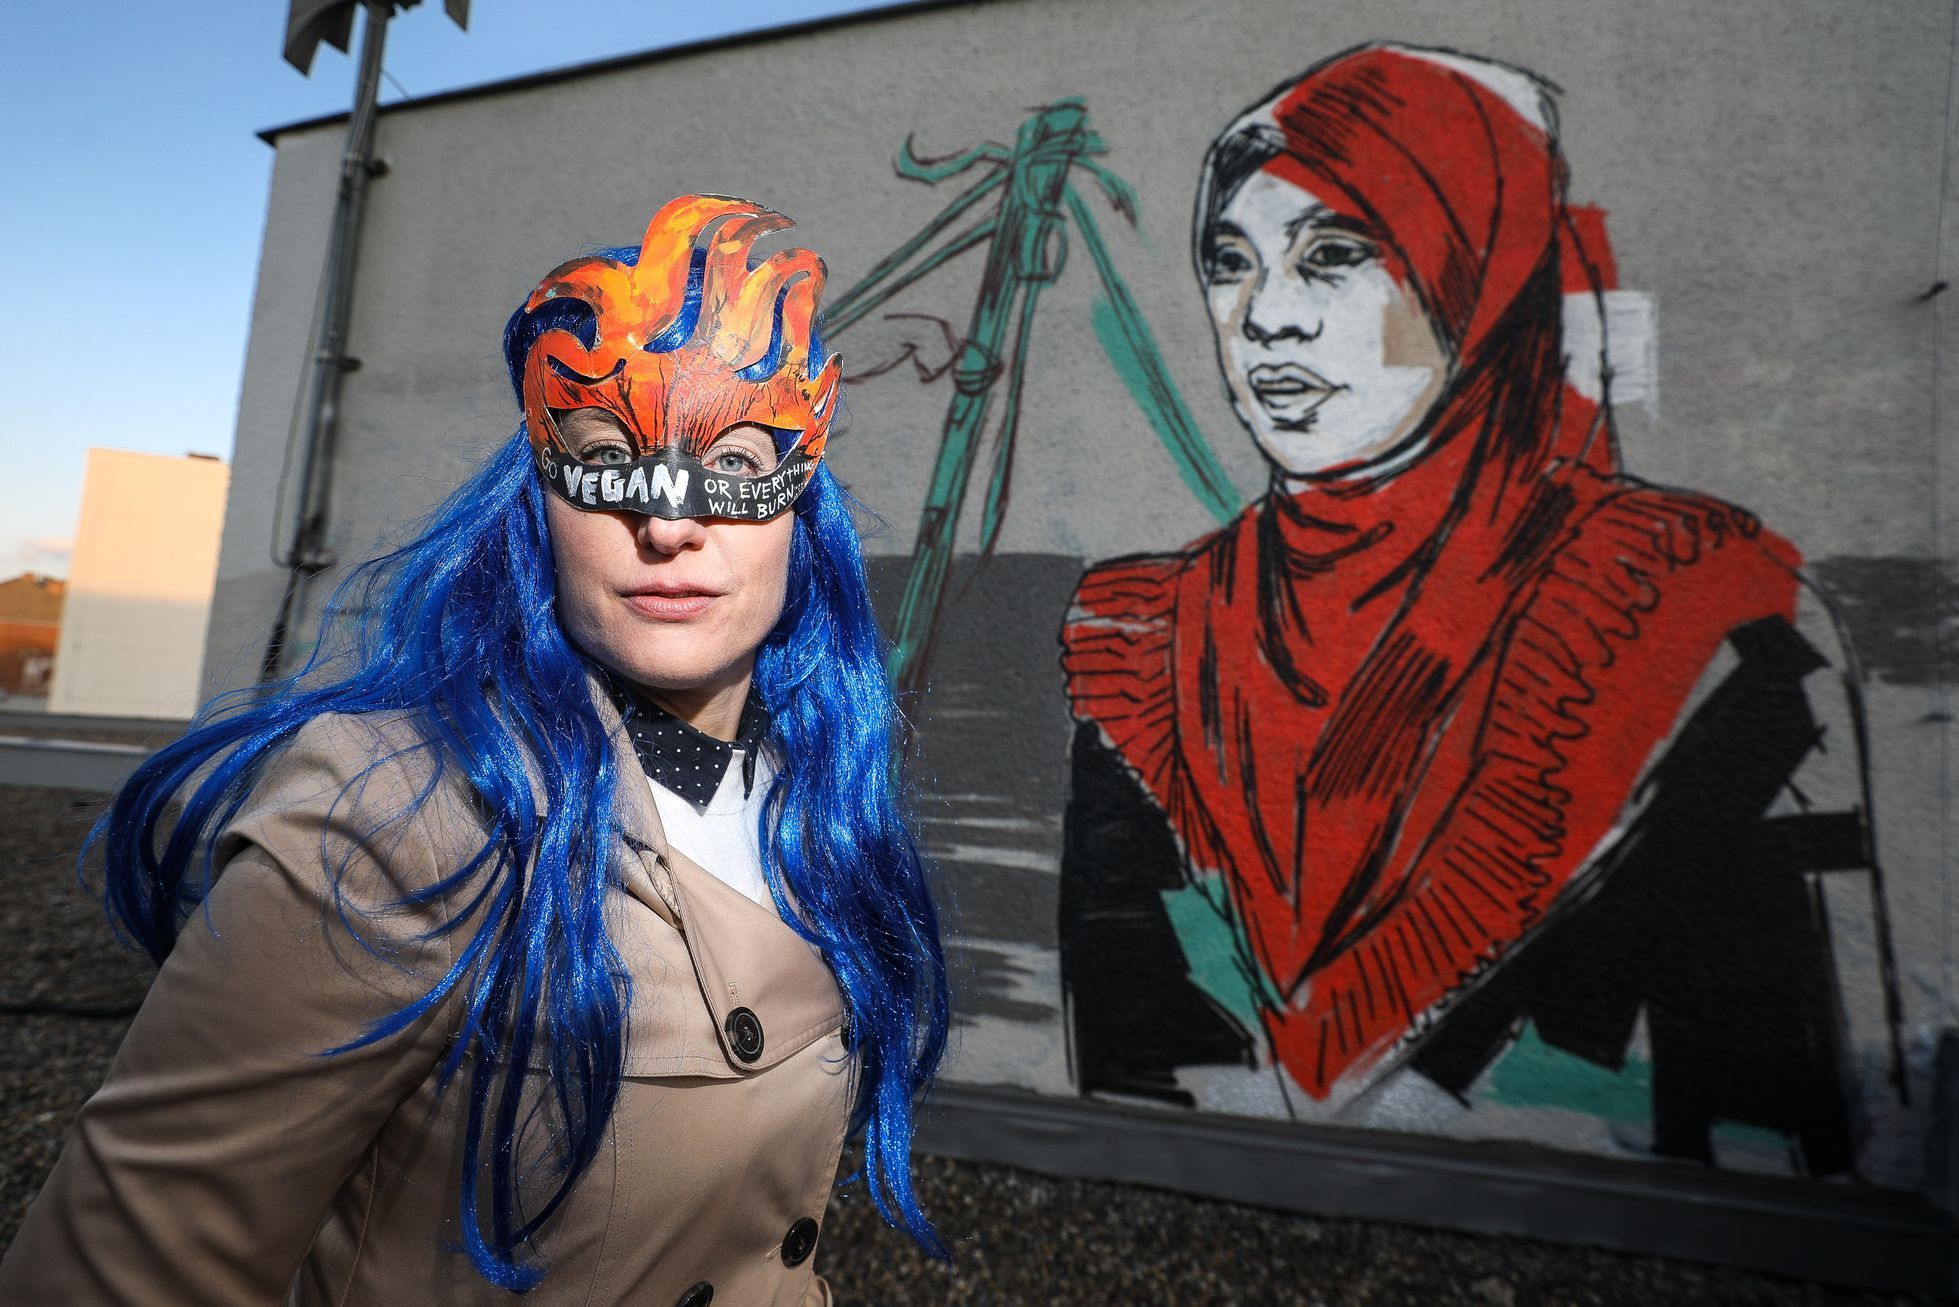 Výtvarnice Toy_Box vytvořila mural / graffiti na Florenci - Tváře klimatické změny, klima, Člověk v tísni